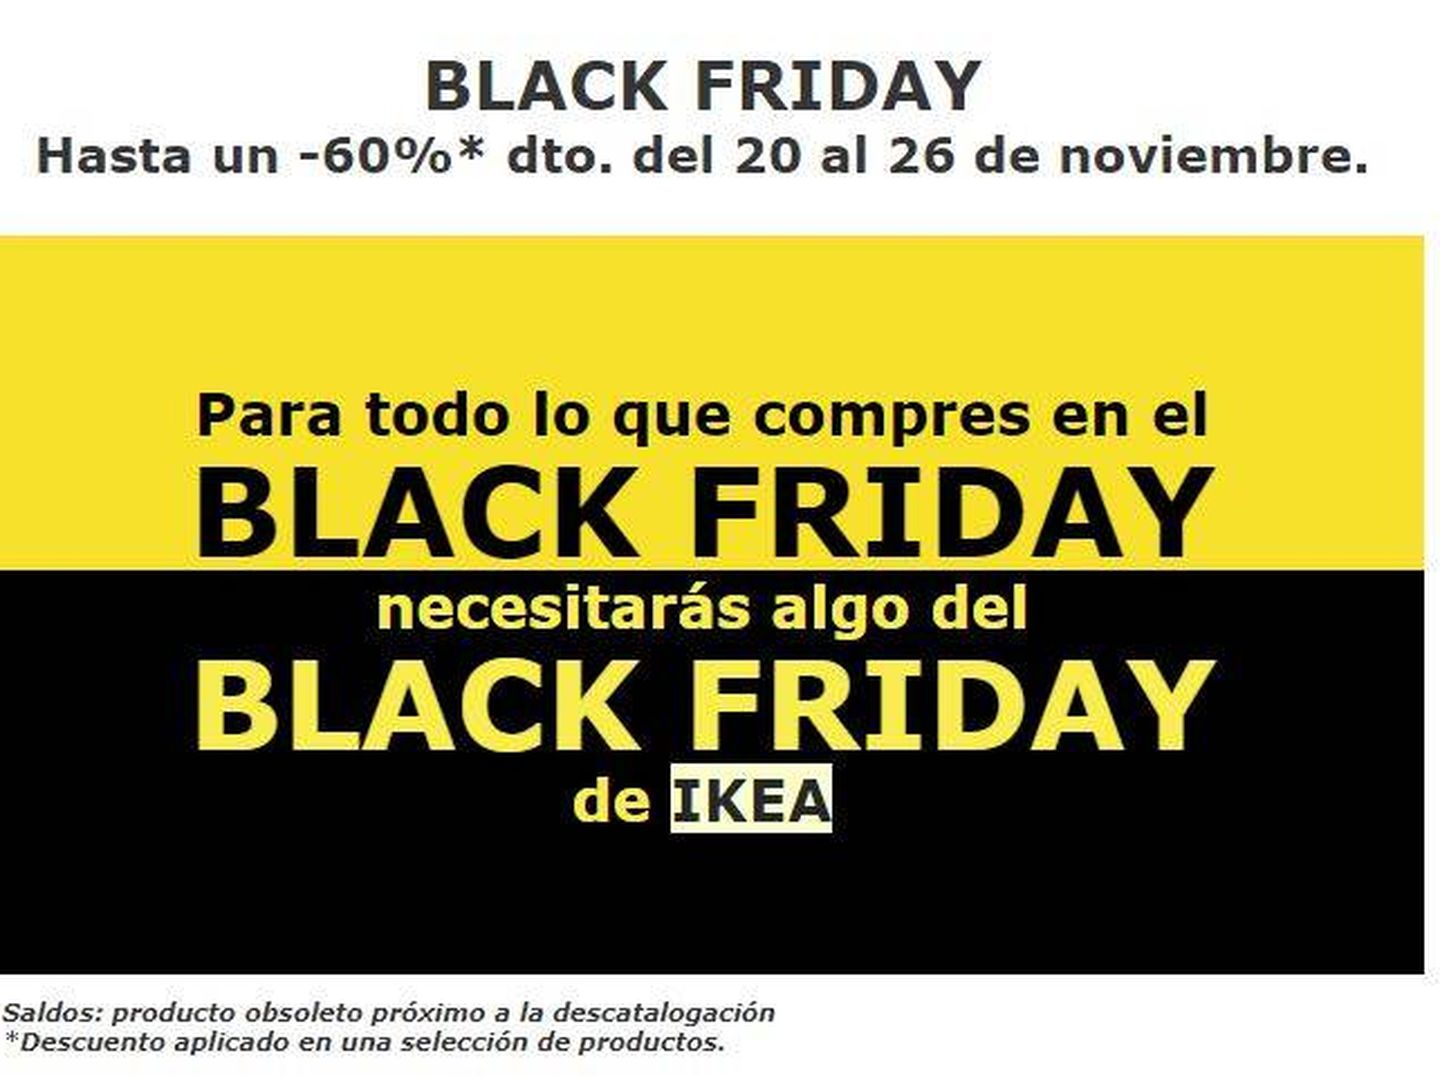 Black Friday en Ikea